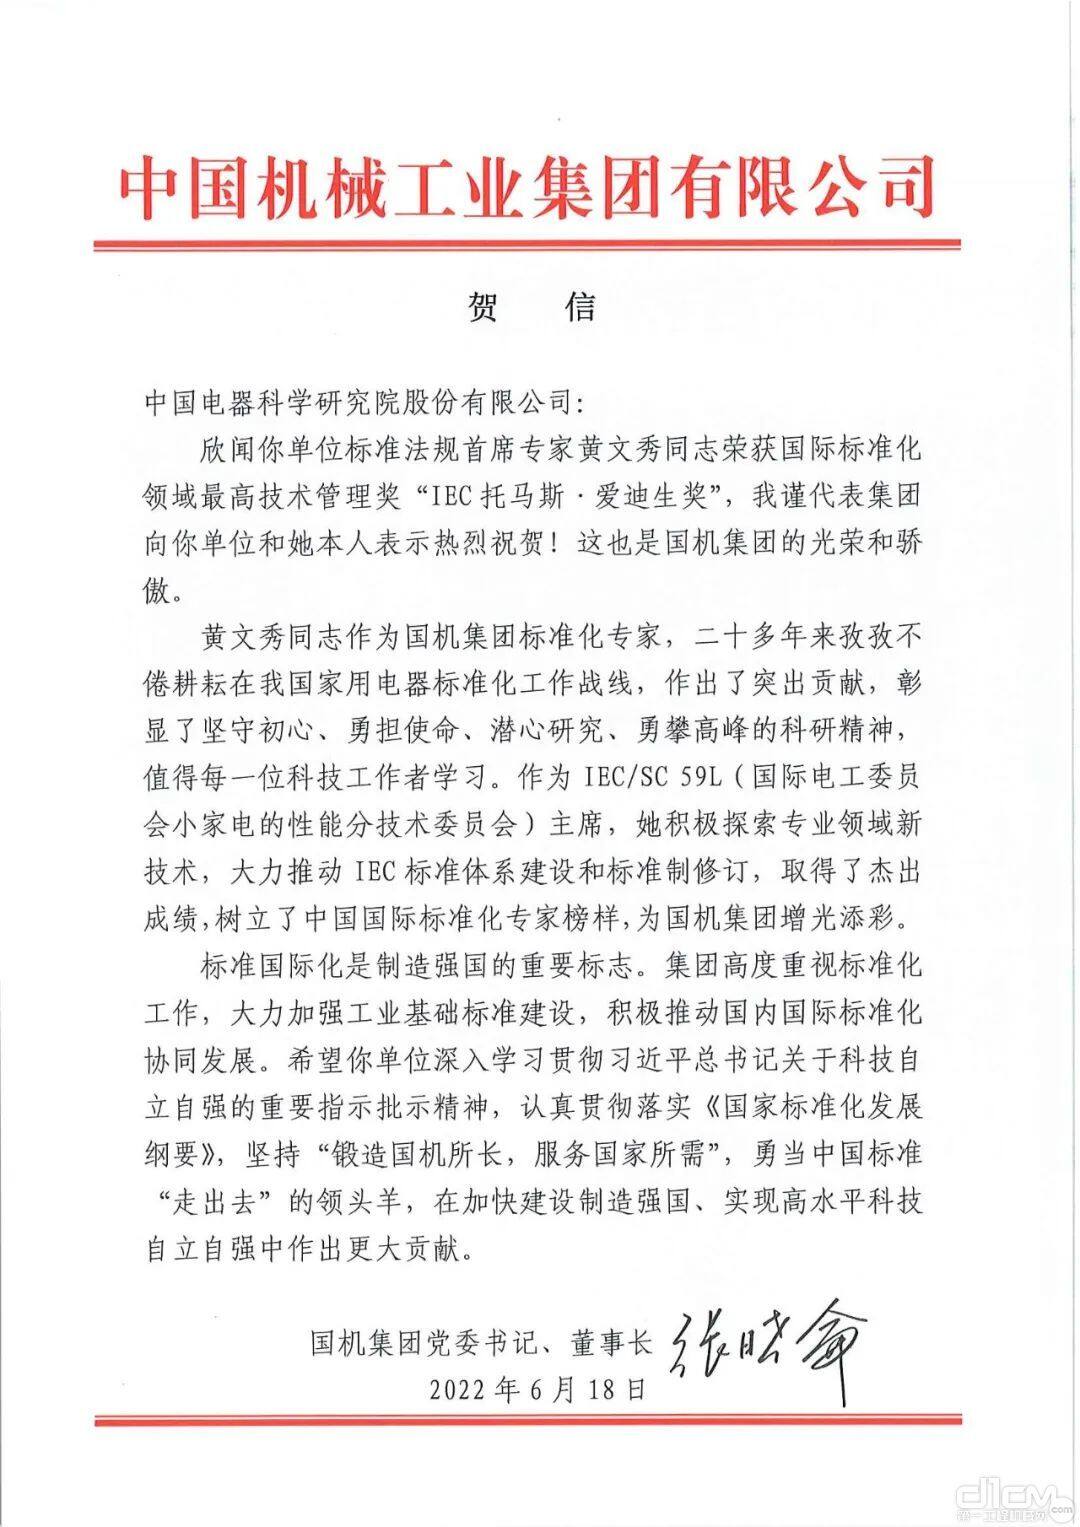 国机集团党委书记、董事长张晓仑第一时间向中国电研和黄文秀发出贺信